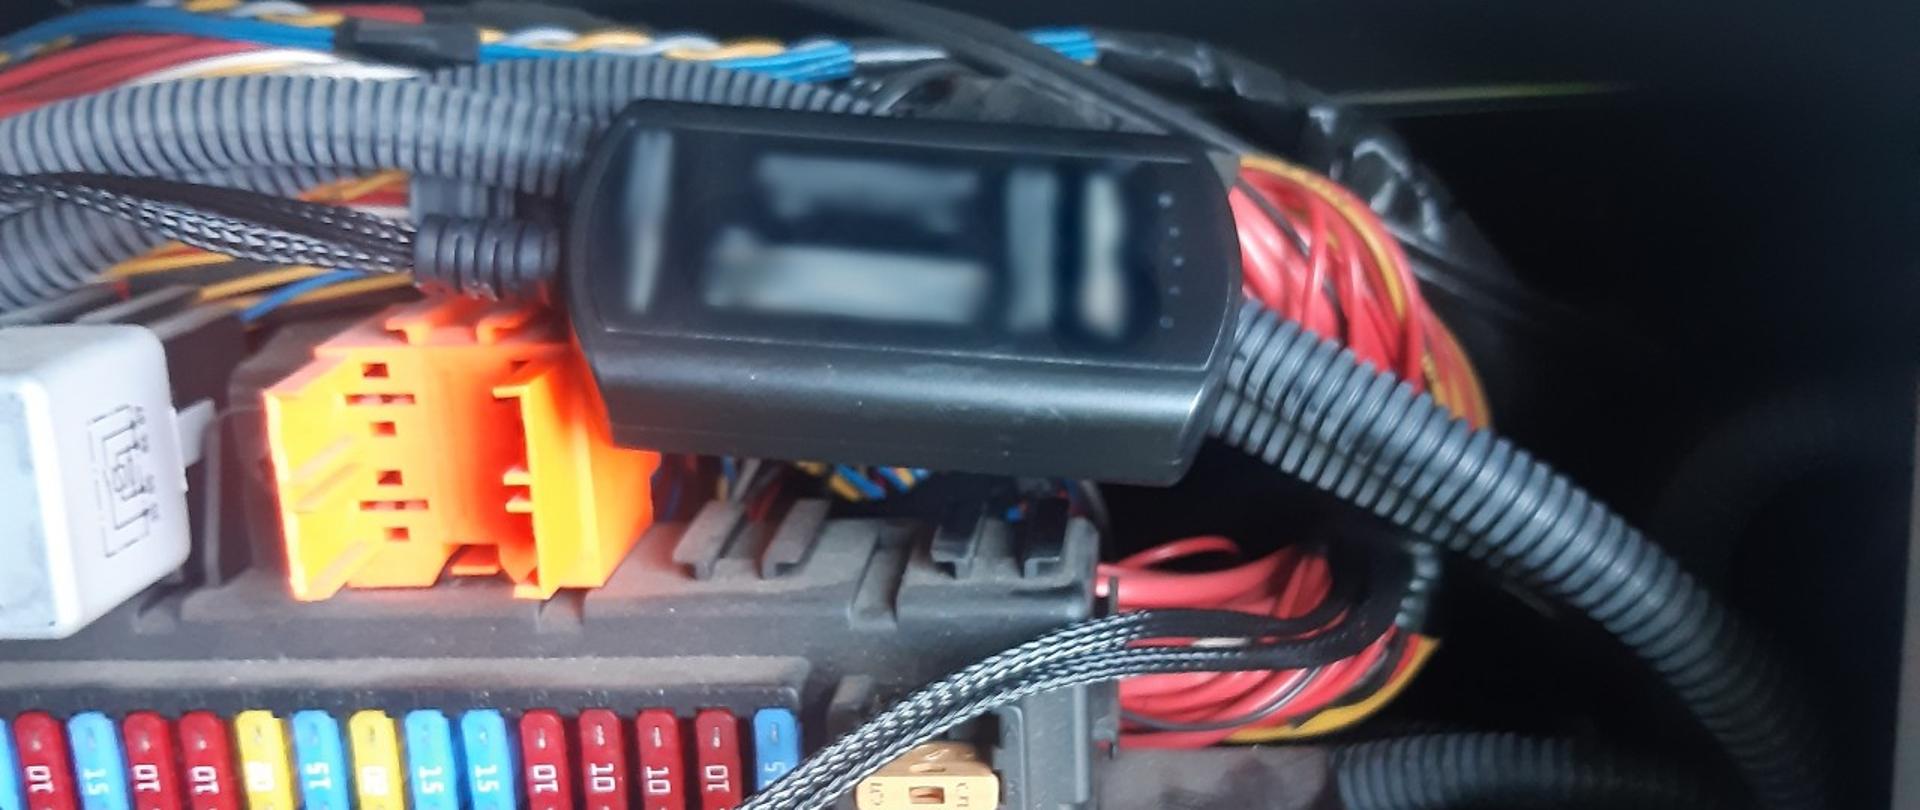 W skrzynce z bezpiecznikami pojazdu znajdowało się niedozwolone urządzenie - emulator AdBlue.